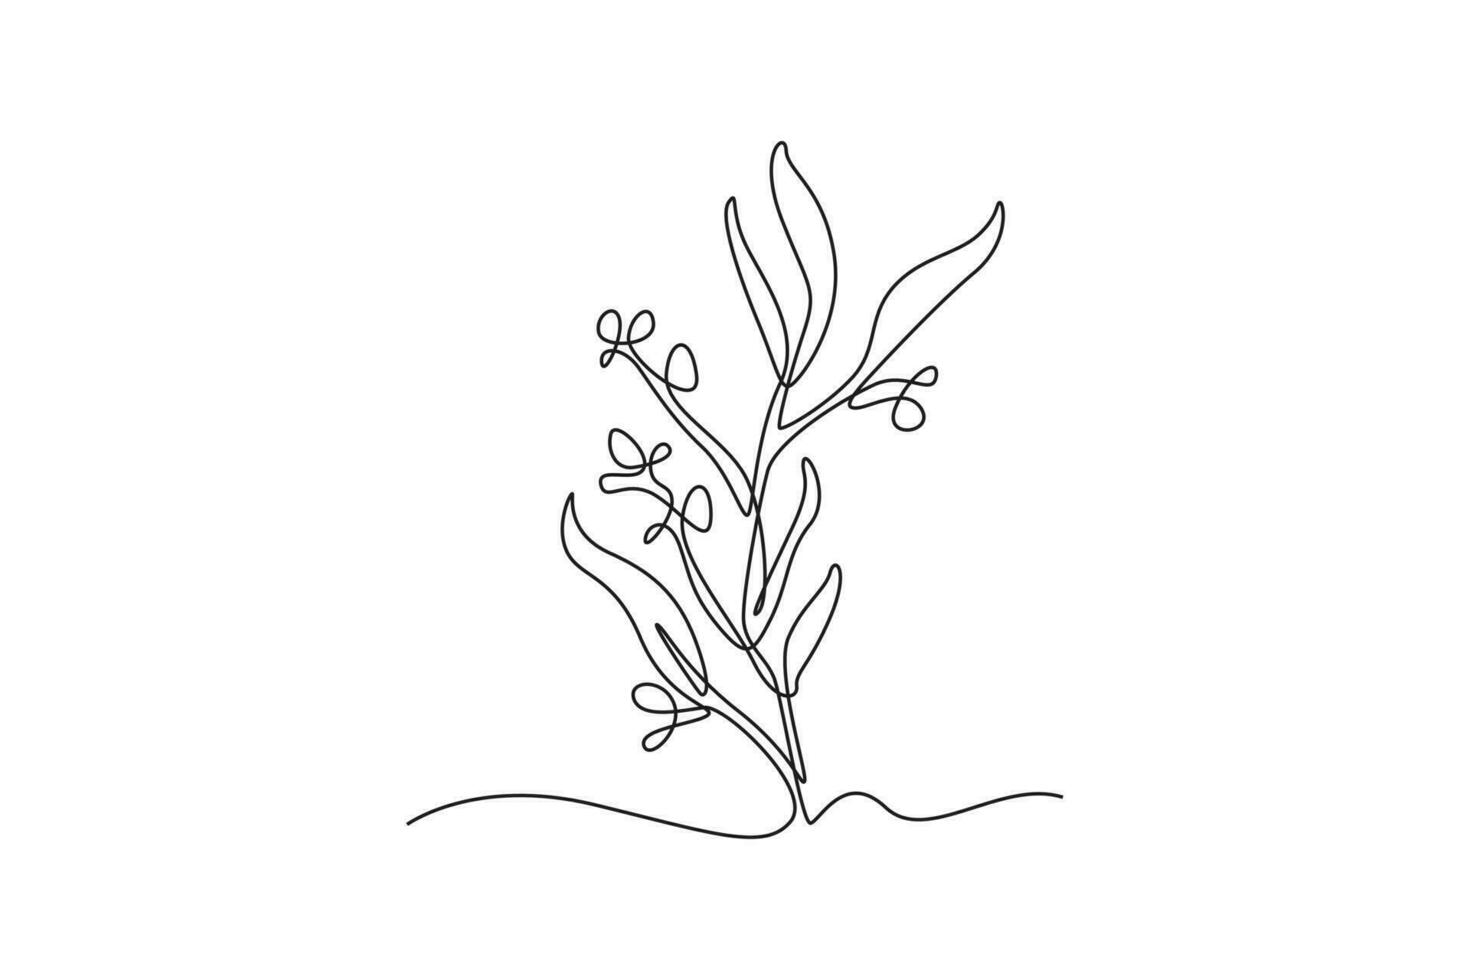 Célibataire un ligne dessin les plantes et herbes concept. continu ligne dessiner conception graphique vecteur illustration.